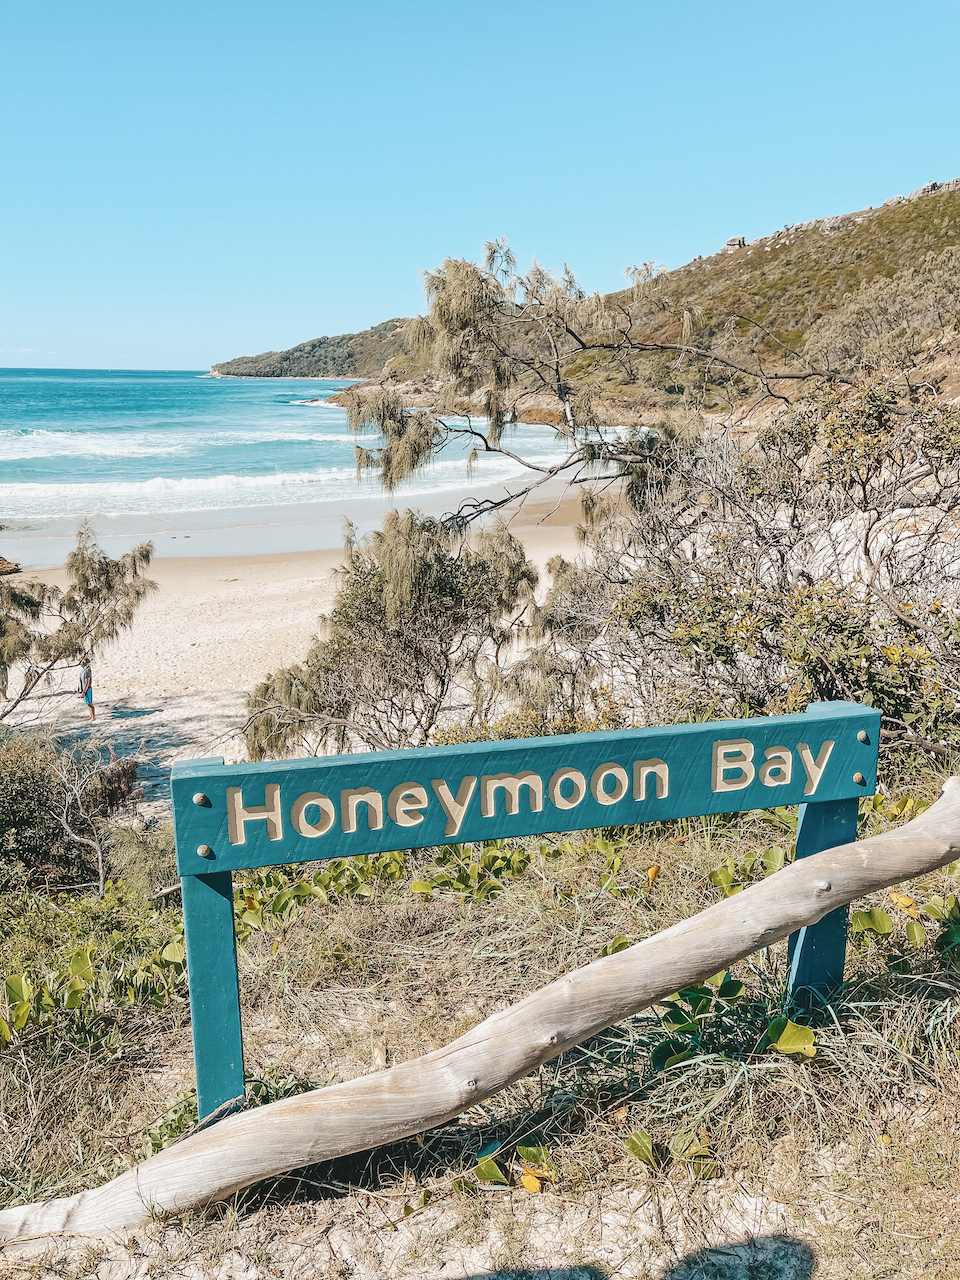 Honeymoon Bay - Île de Moreton - Queensland - Australie